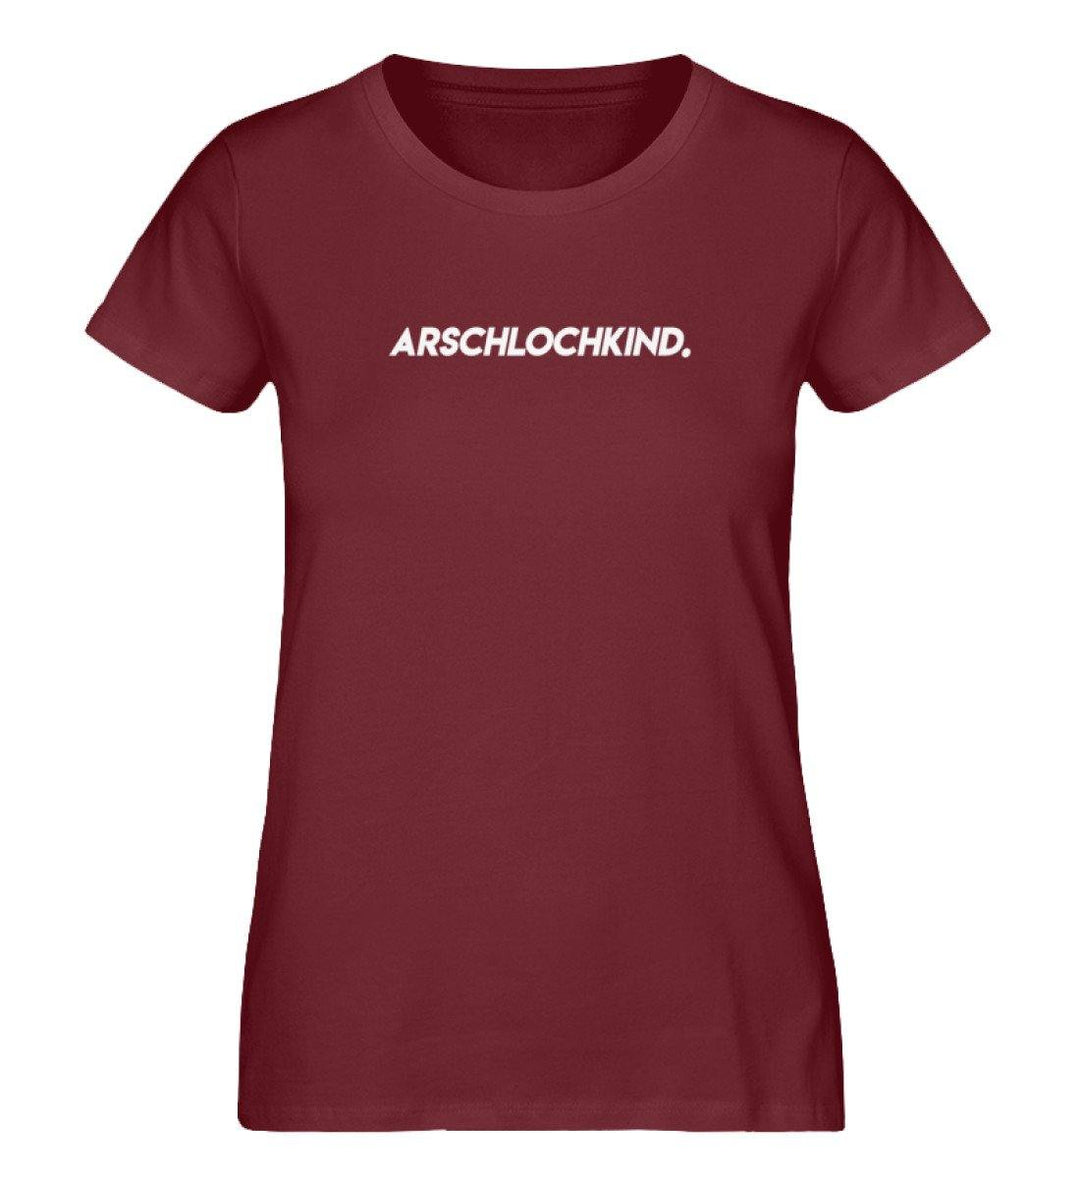 Arschlochkind - Damen Premium Organic Shirt - Words on Shirts Sag es mit dem Mittelfinger Shirts Hoodies Sweatshirt Taschen Gymsack Spruch Sprüche Statement